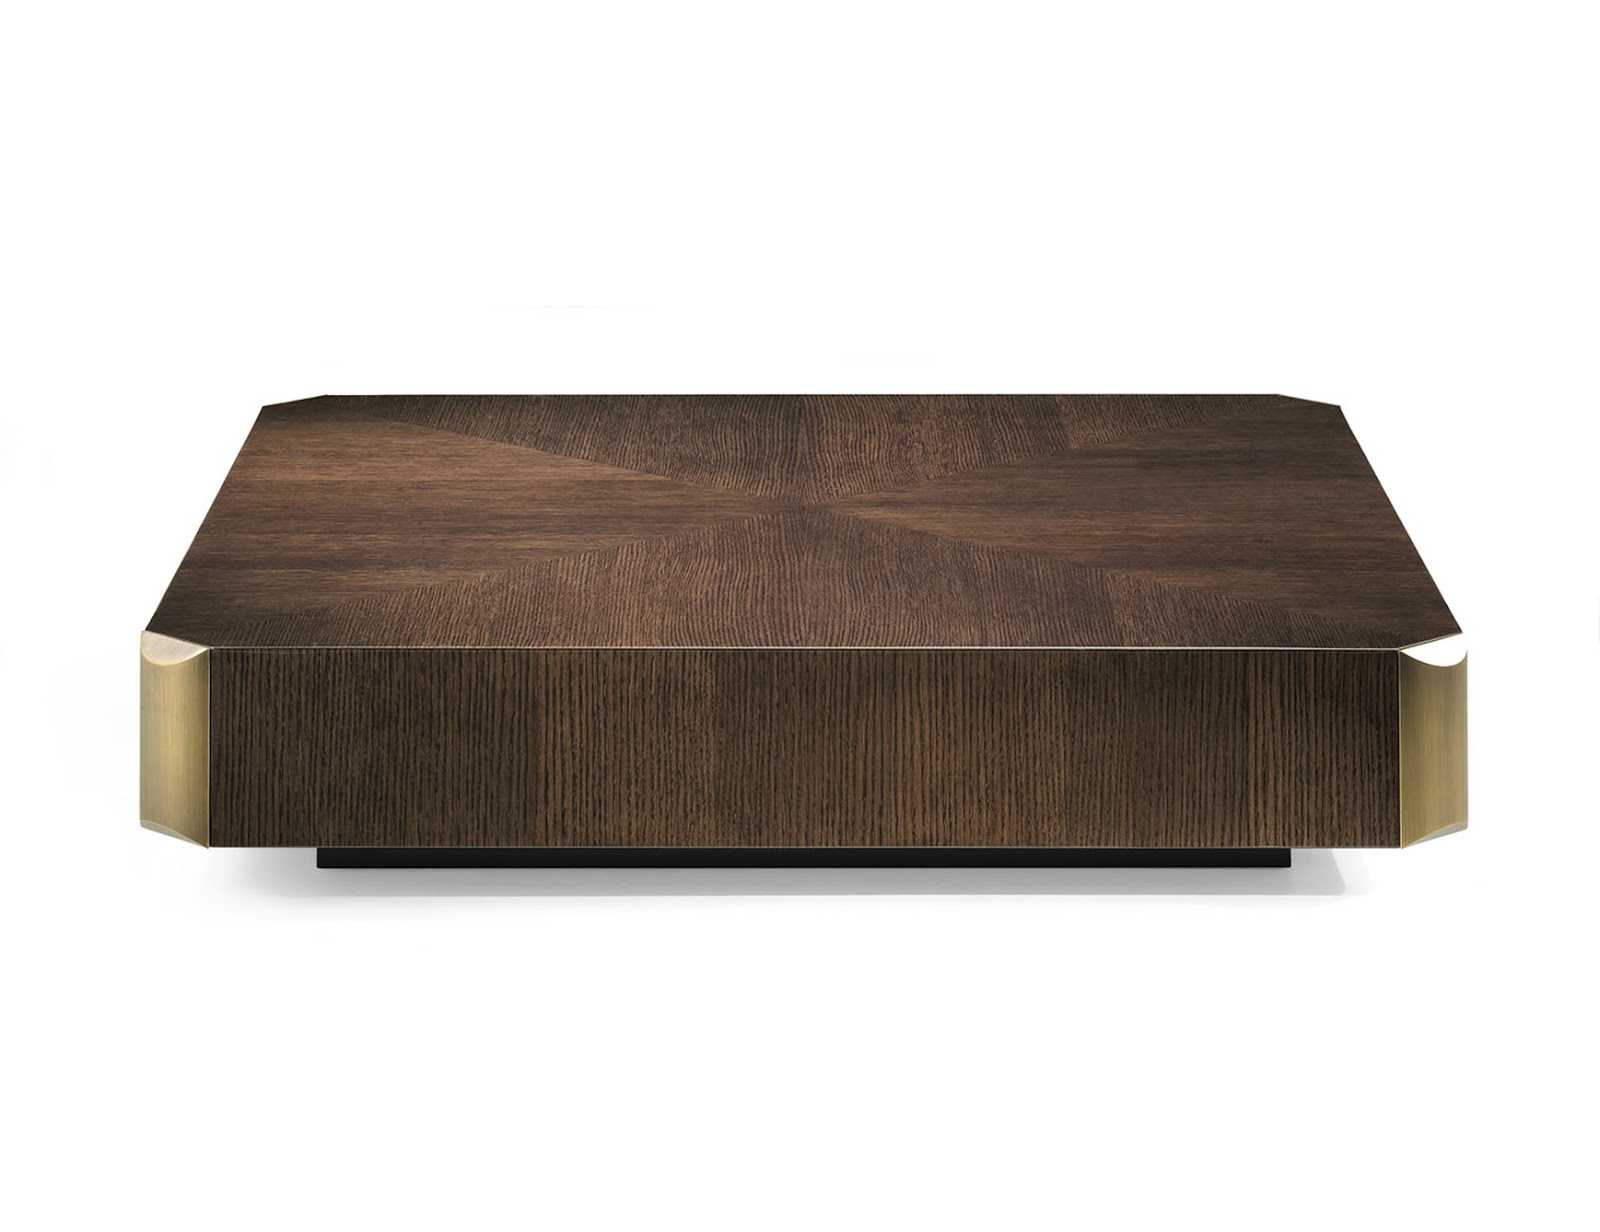 Một ví dụ dành cho bạn đó là bàn cà phê bằng gỗ sồi tự nhiên của thương hiệu Tiziano, Ý